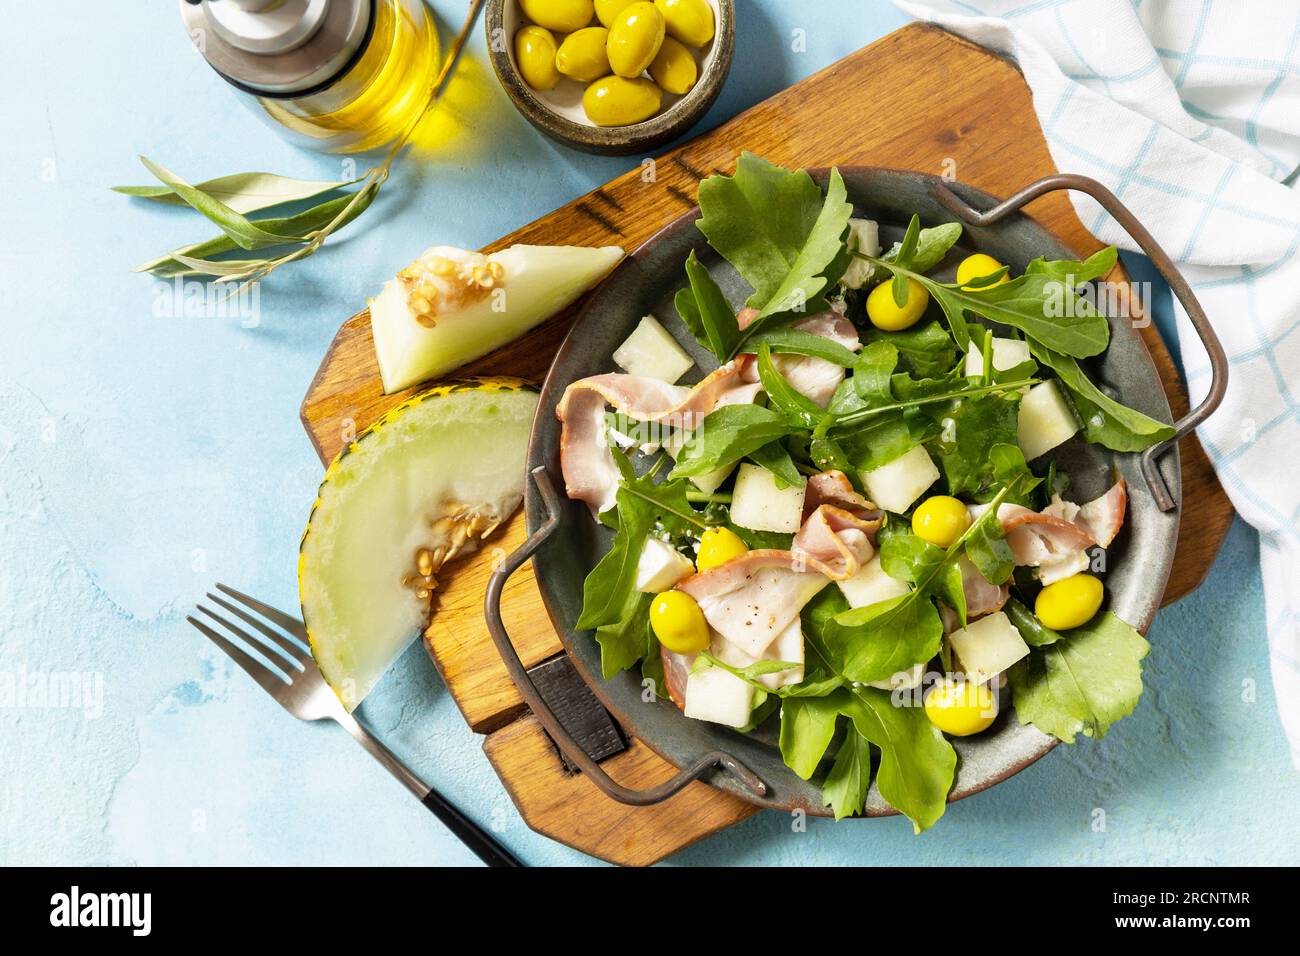 Salade méditerranéenne d'été avec melon, bacon, olives, fromage blanc et roquette sur fond de pierre bleue. Apéritif traditionnel espagnol et italien. VI Banque D'Images